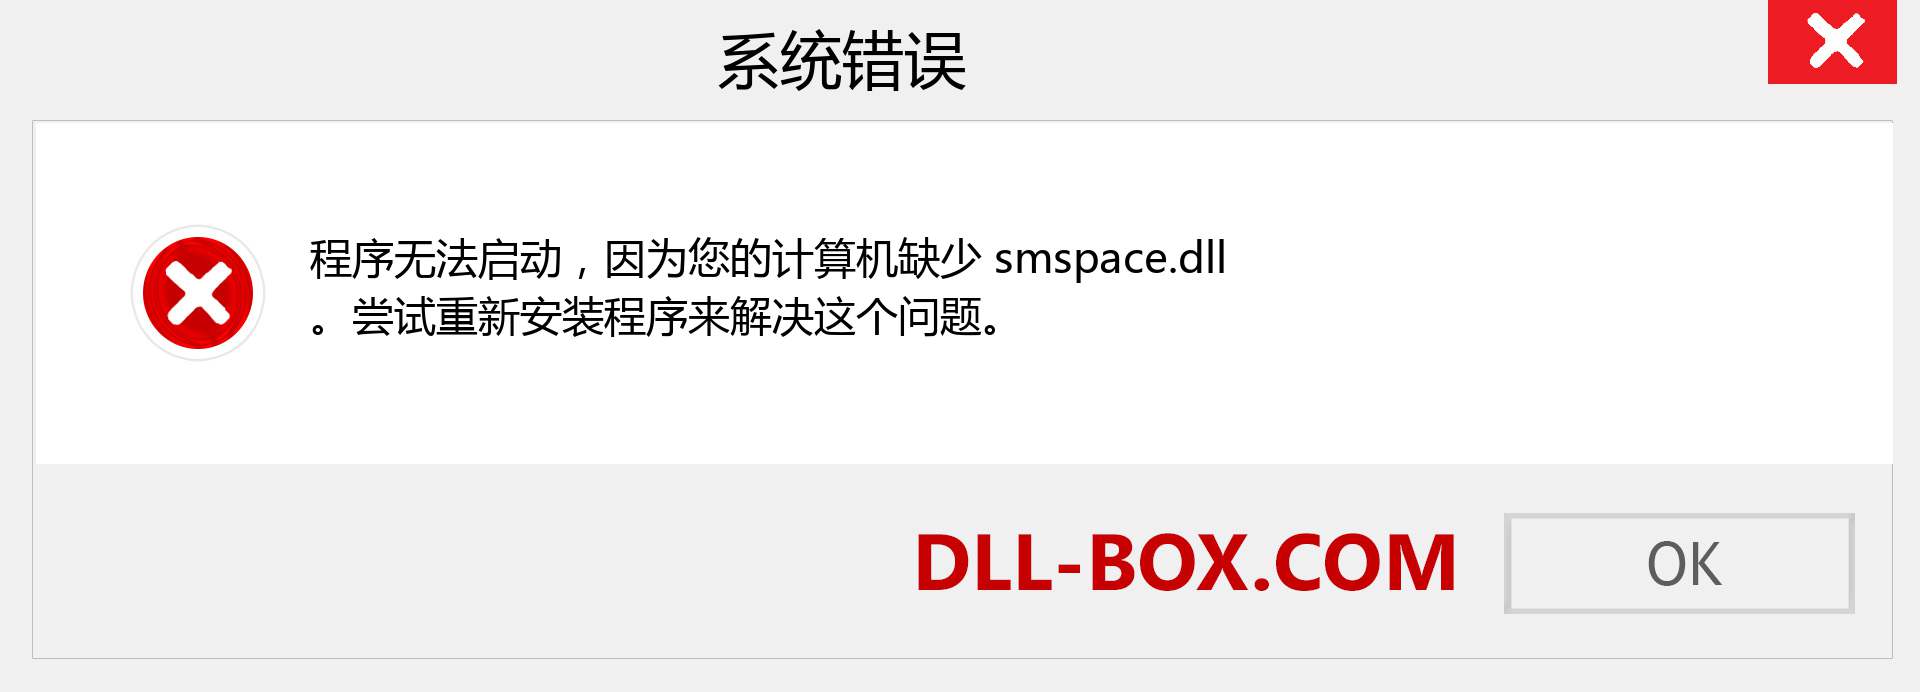 smspace.dll 文件丢失？。 适用于 Windows 7、8、10 的下载 - 修复 Windows、照片、图像上的 smspace dll 丢失错误